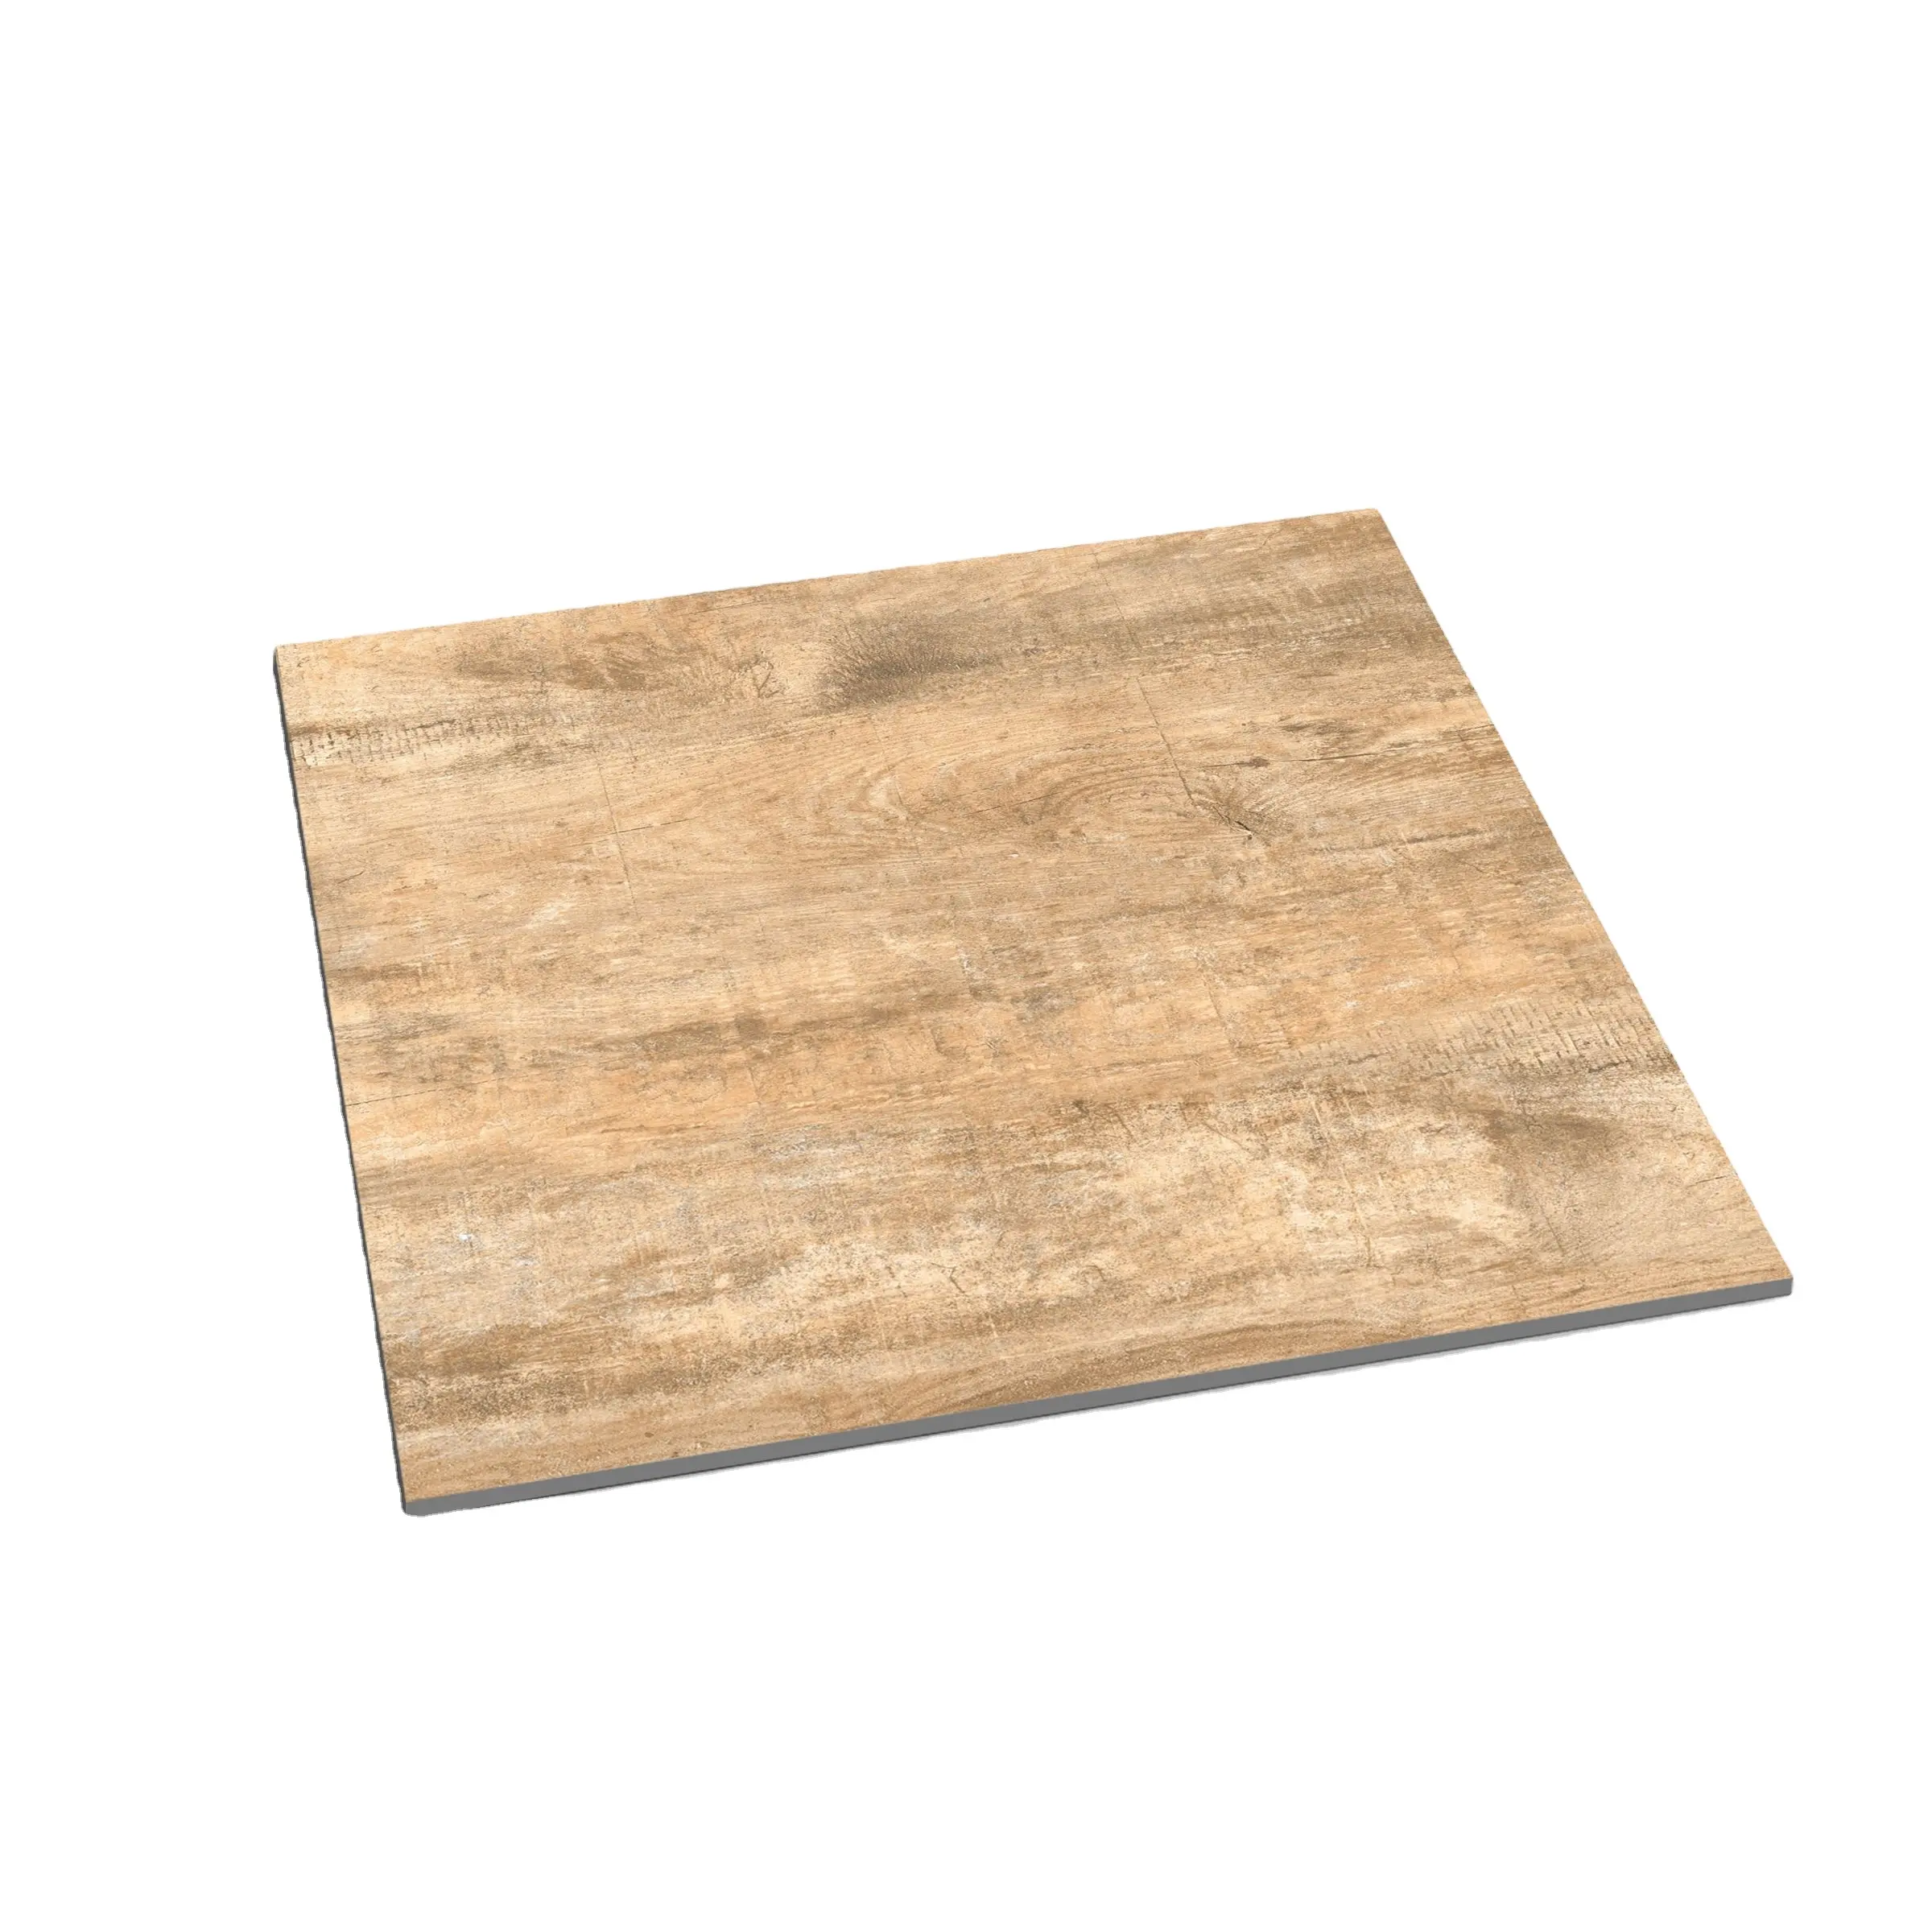 Miglior scelta di fascia alta marrone in legno 600x600mm buon prezzo porcellana pavimento di piastrelle clip per ristorante